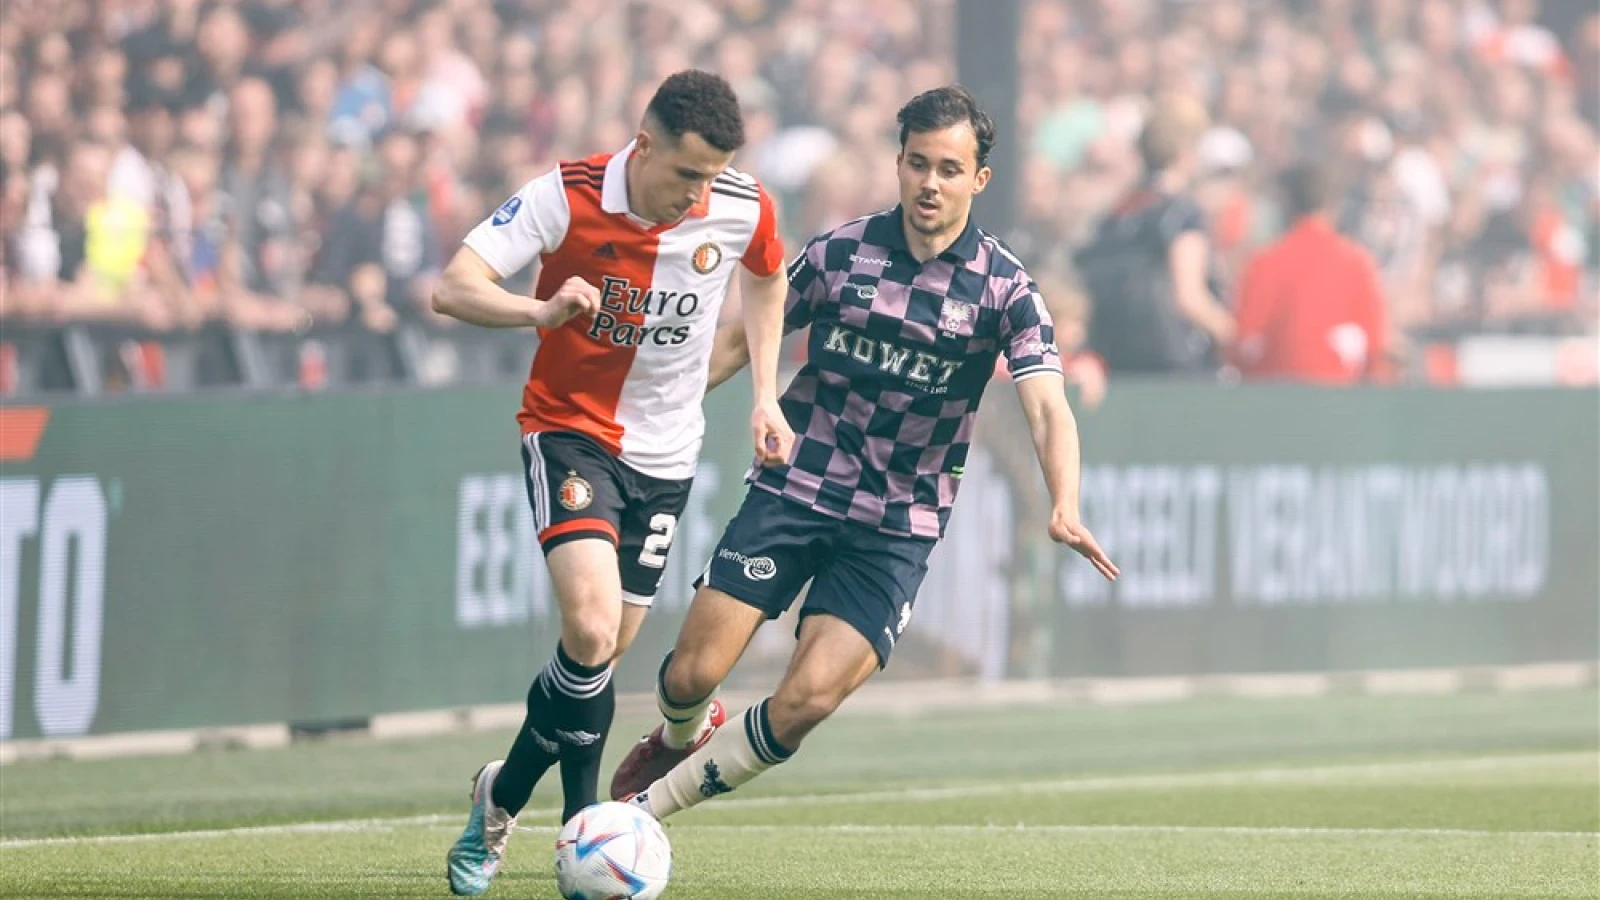 LIVE | Feyenoord - Go Ahead Eagles 3-0 | Einde wedstrijd